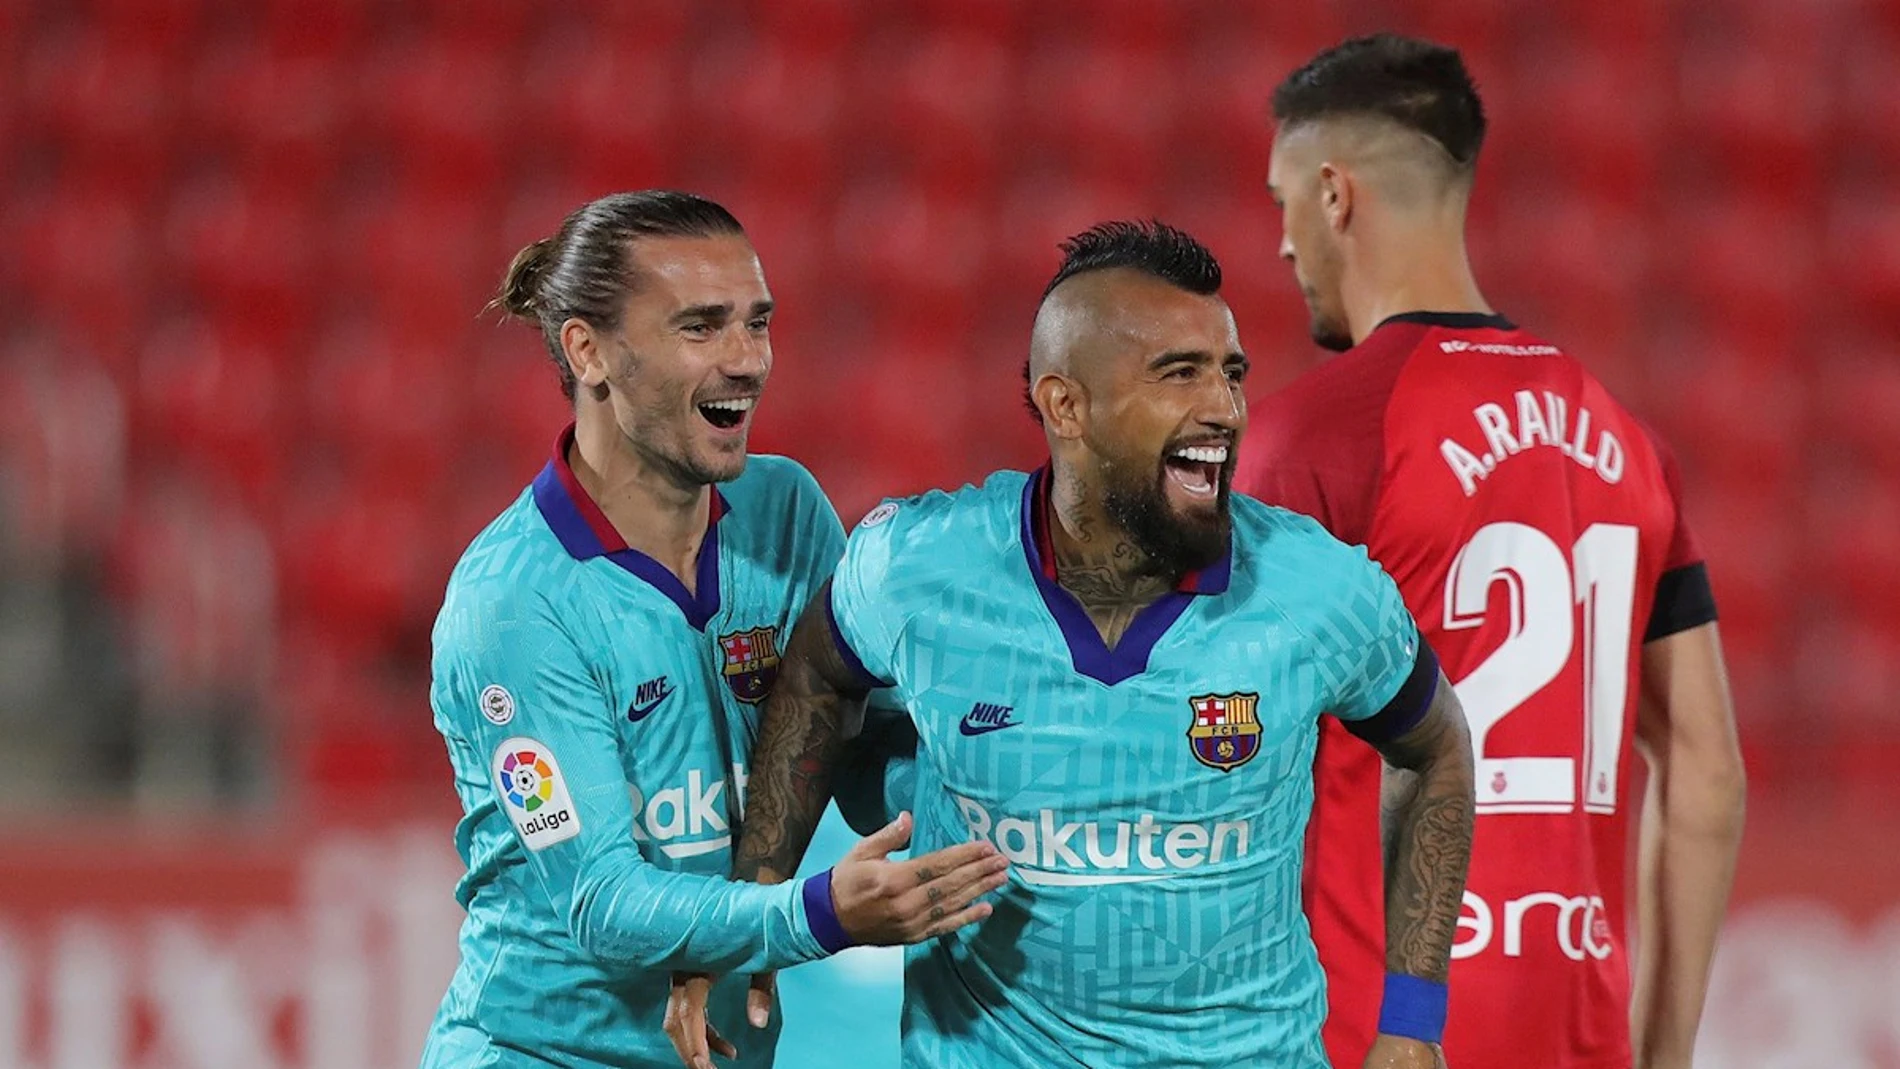 RCD Mallorca - FC Barcelona: Resultado del partido de fútbol de hoy, Santander, en directo